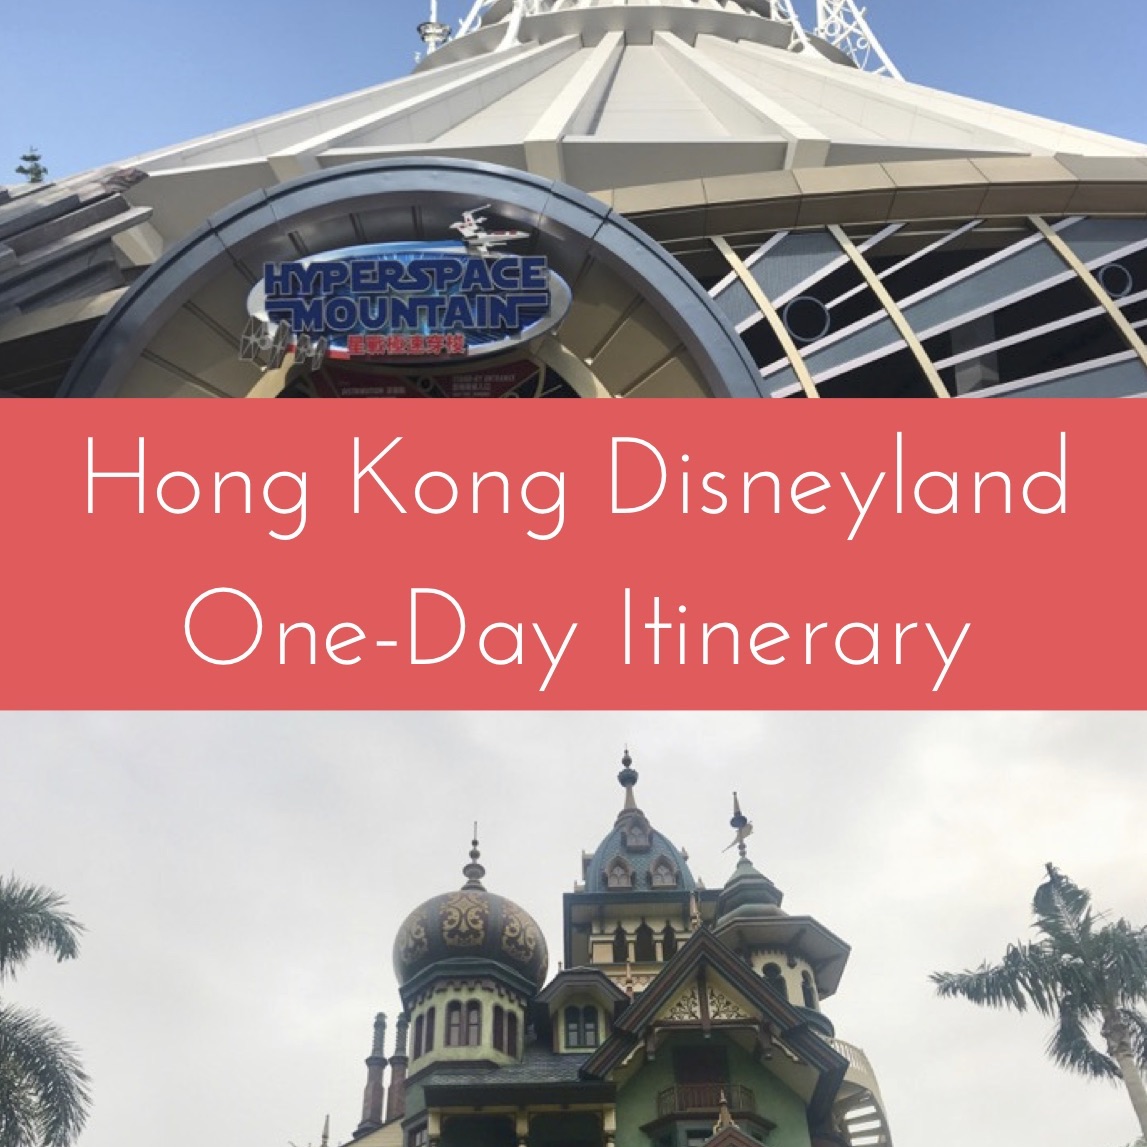 Itinerario de un día de Hong Kong Disneyland